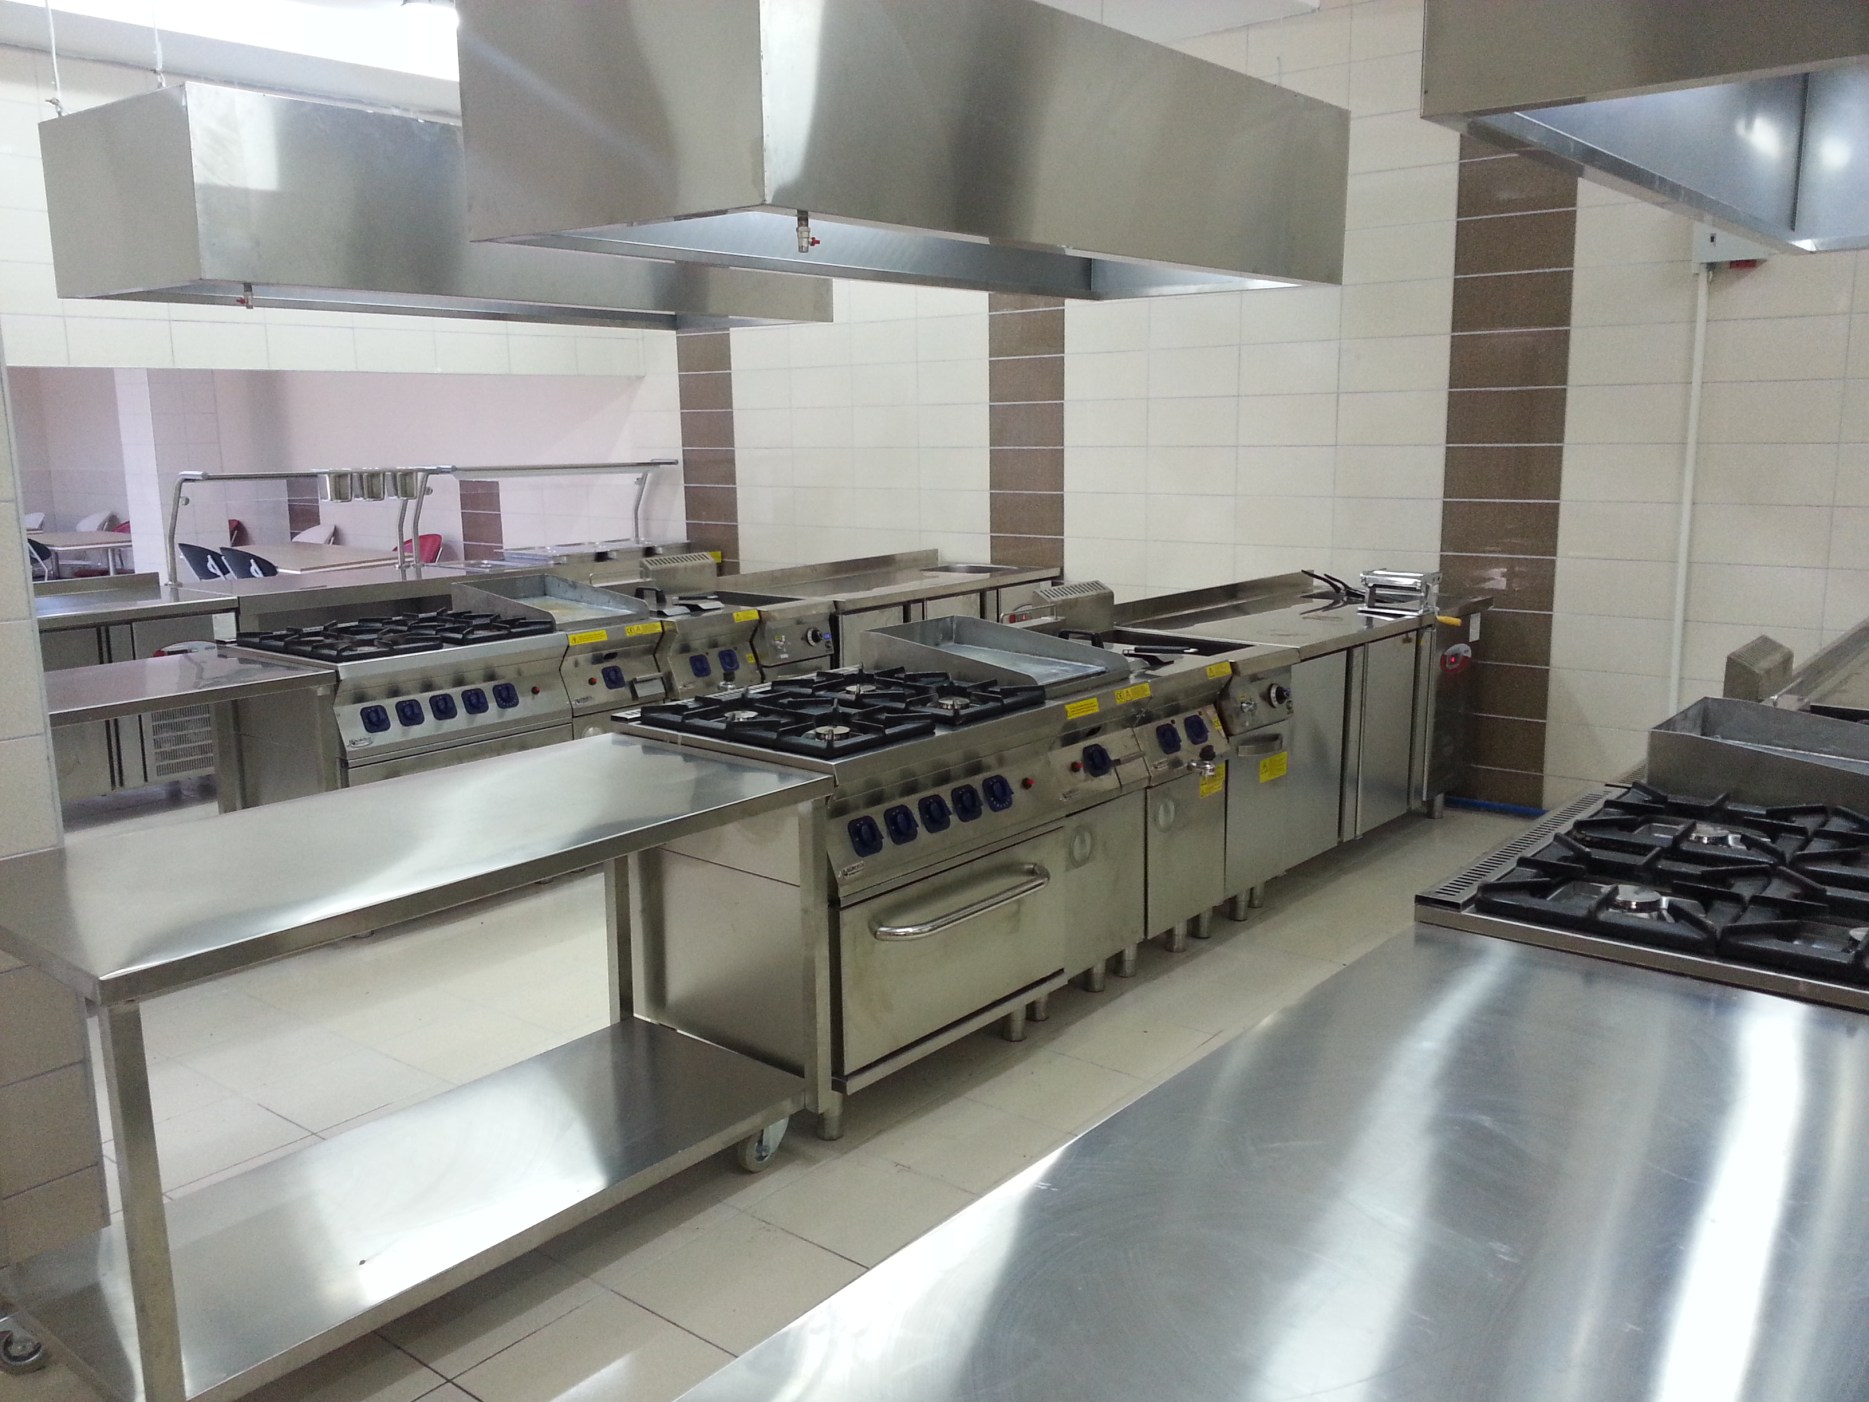 S A Y F A 14 Kendi Mutfaklarını Kendileri Temizlediler ü ç aydan beri tadilatı devam eden mutfağımız nihayet bitti.